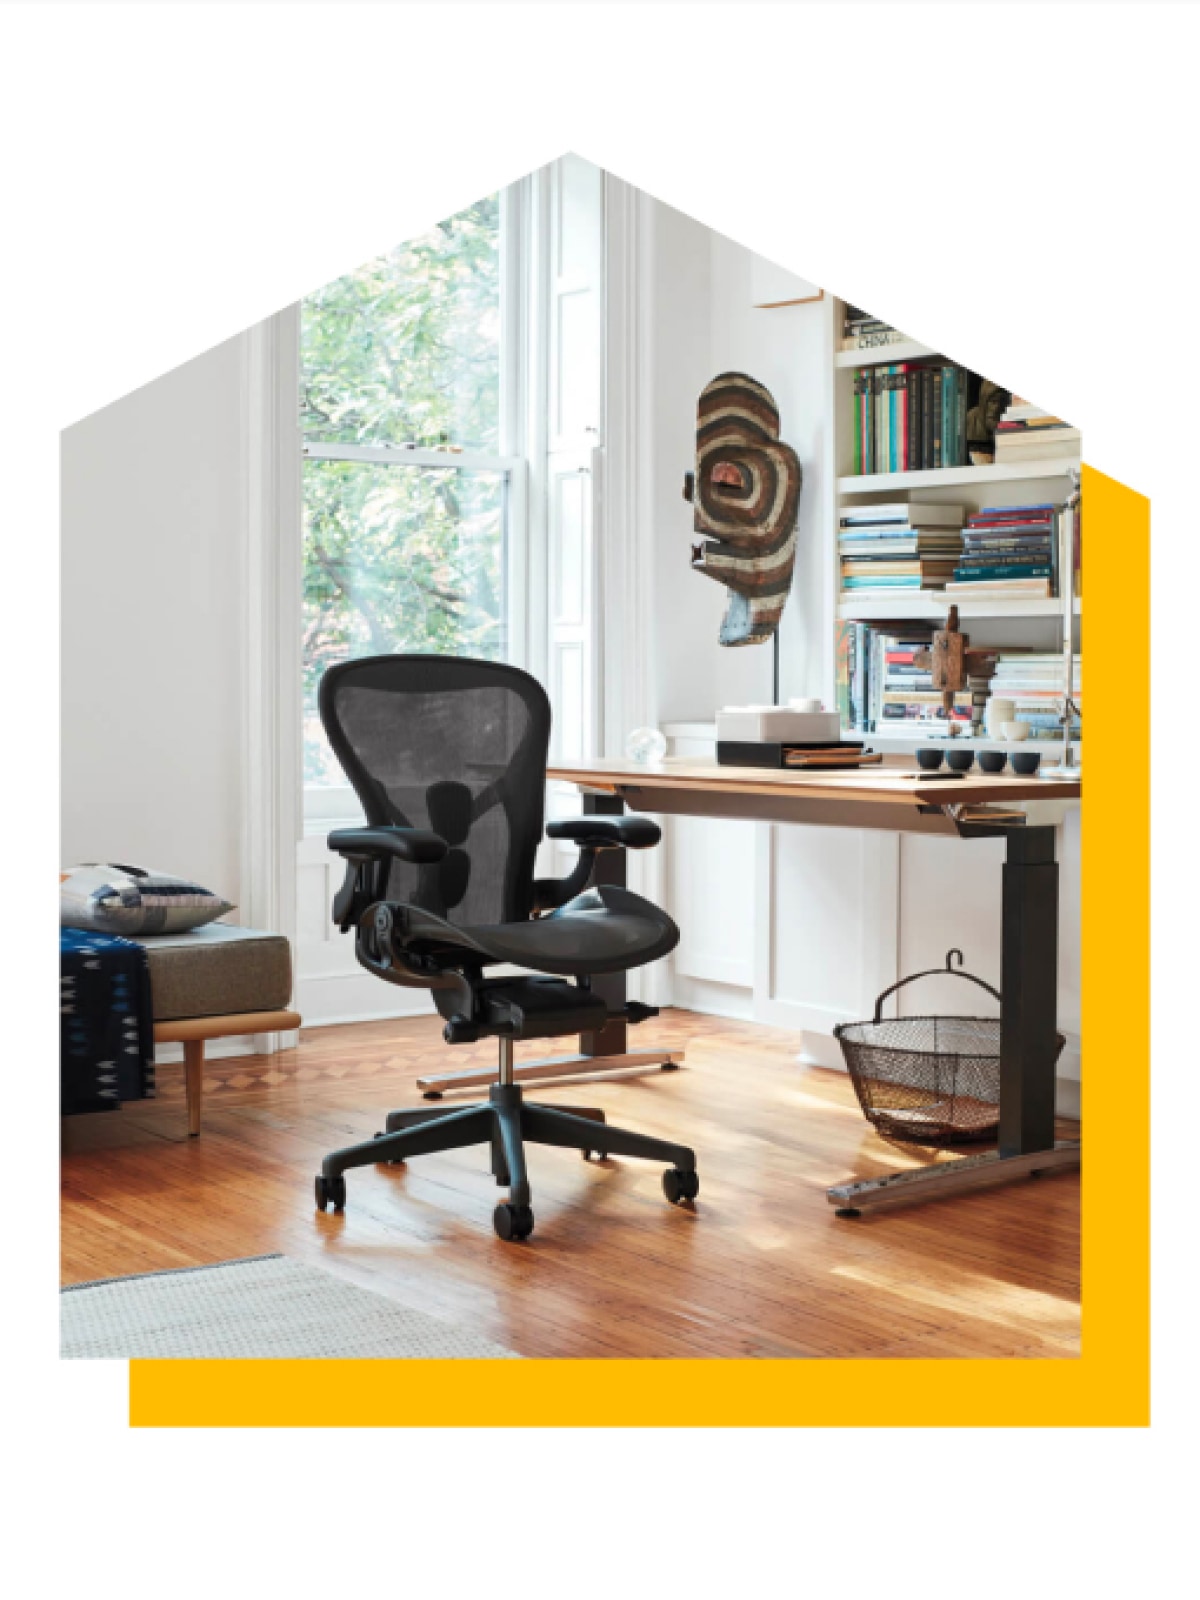 坐姿-站姿切换两用办公桌的旁边有一张石墨黑色的Aeron座椅。图片被剪辑成房屋形状，背后有一个亮黄色的水滴阴影。